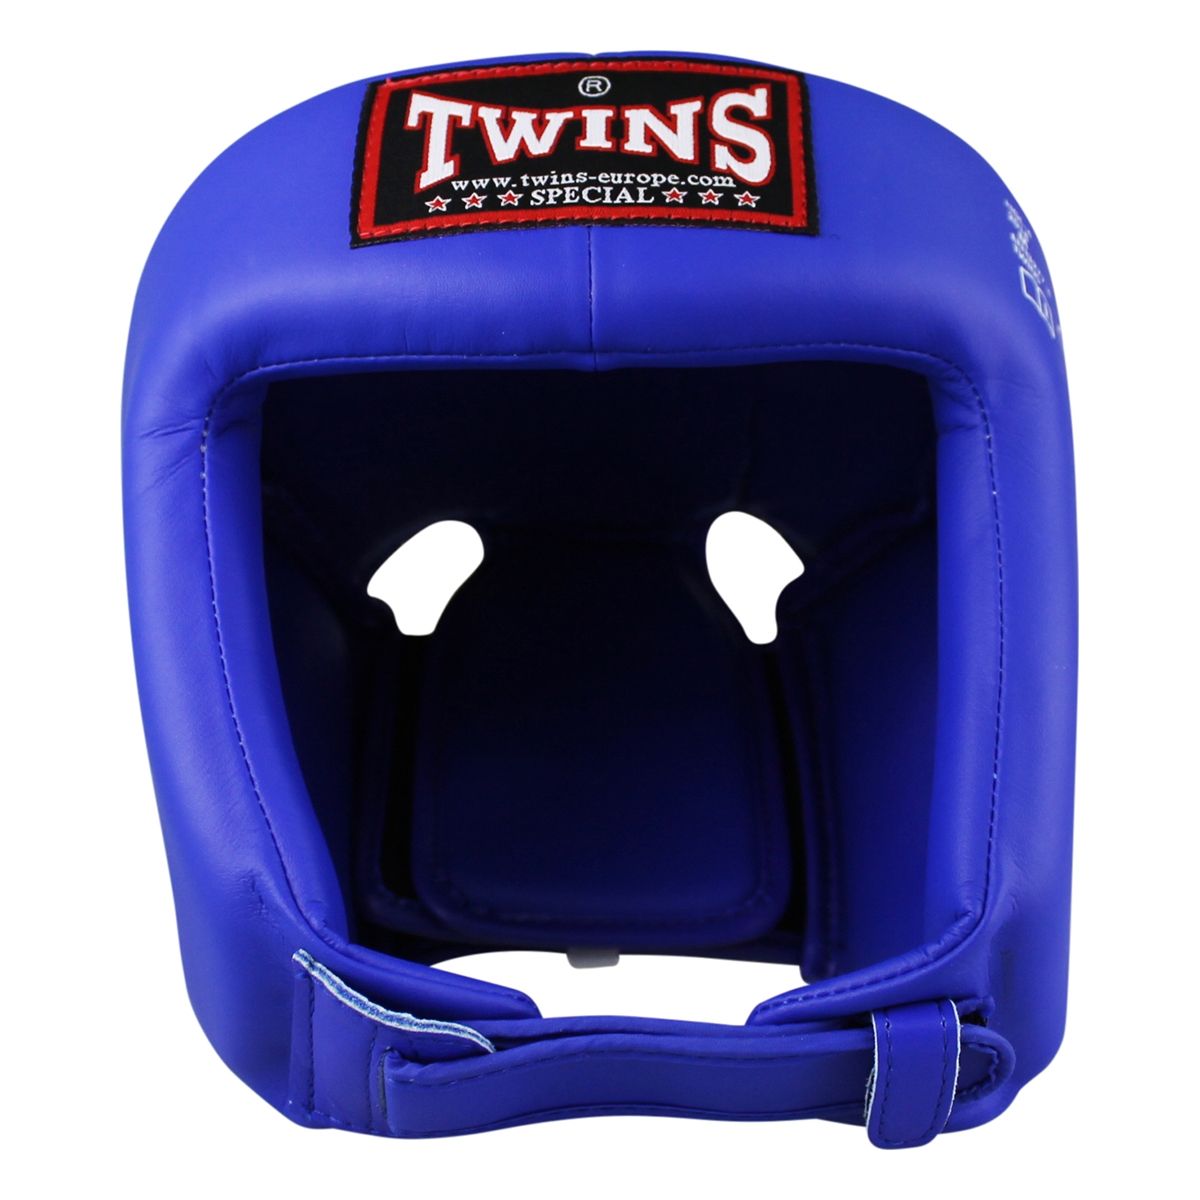 Twins Special - hoofdbeschermer - hgl 4 blauw